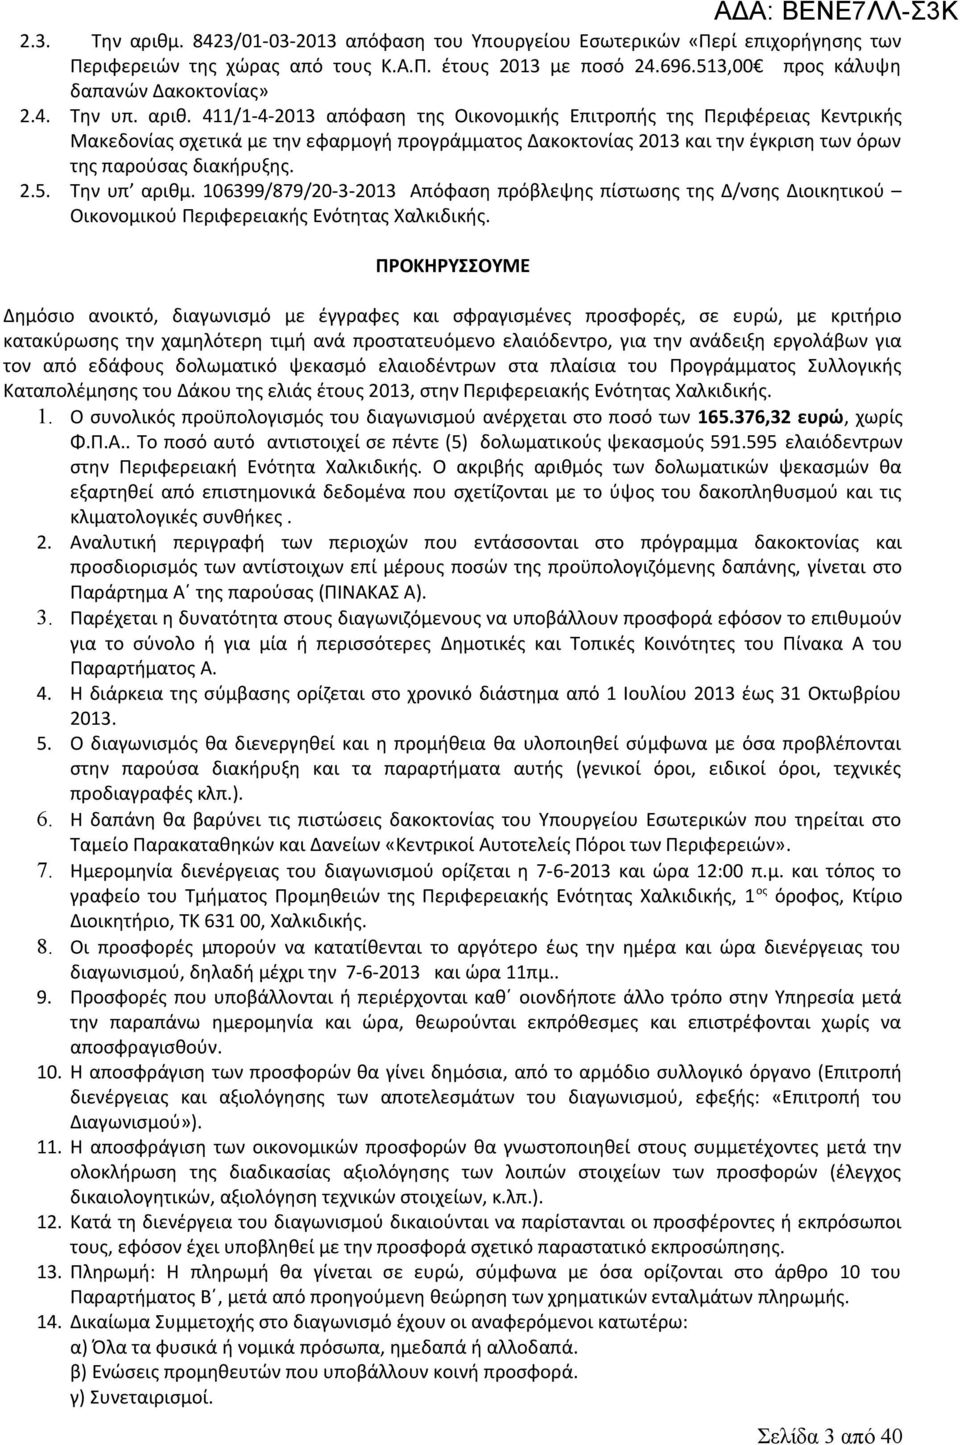 Την υπ αριθμ. 106399/879/20-3-2013 Απόφαση πρόβλεψης πίστωσης της Δ/νσης Διοικητικού Οικονομικού Περιφερειακής Ενότητας Χαλκιδικής.